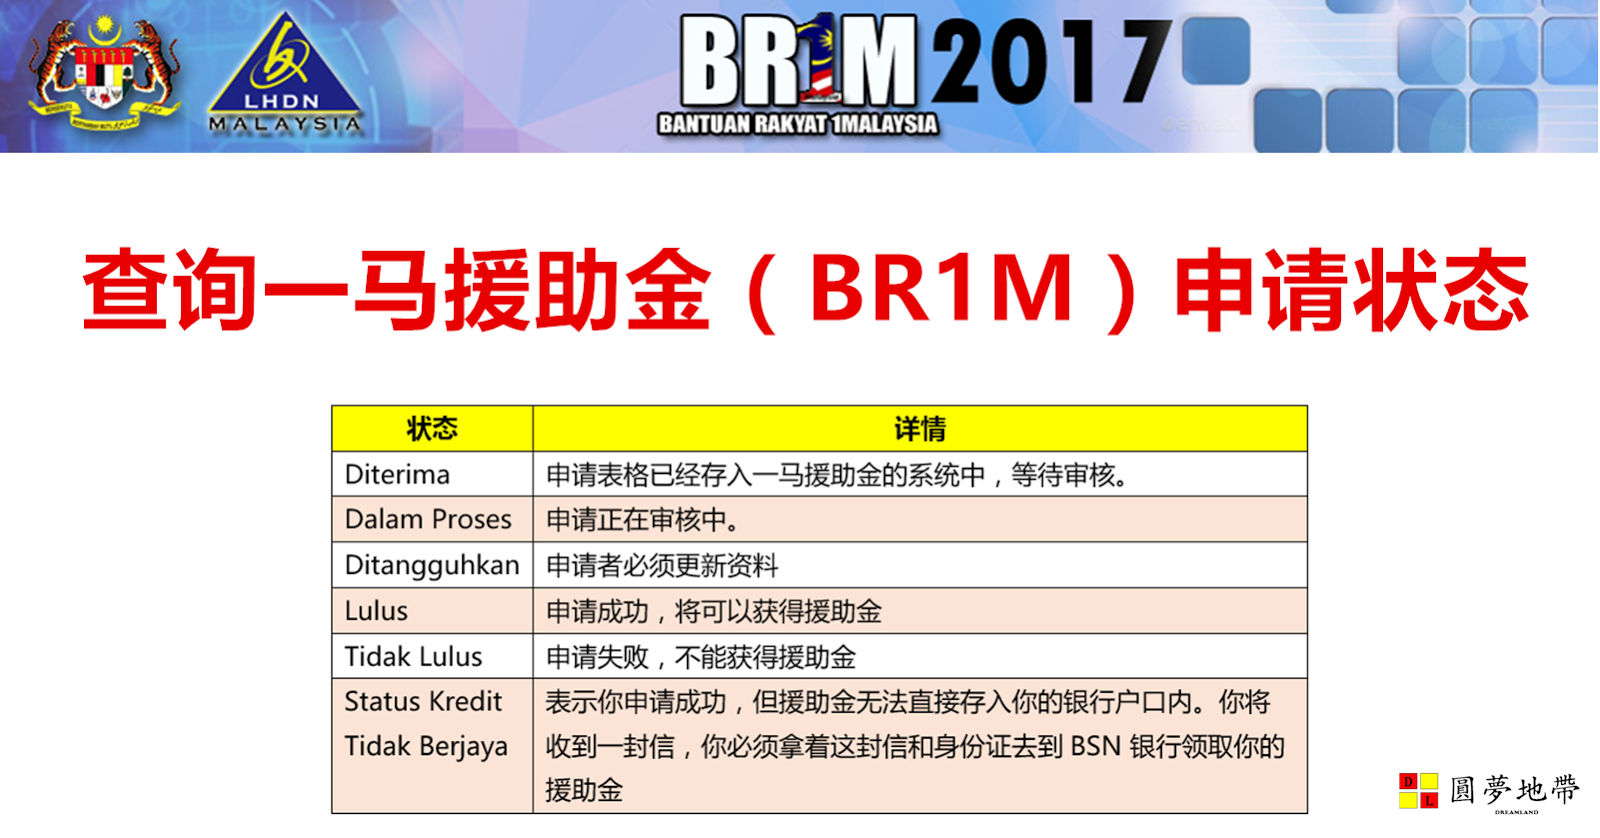 Status Br1m Dalam Proses - Contoh Diam